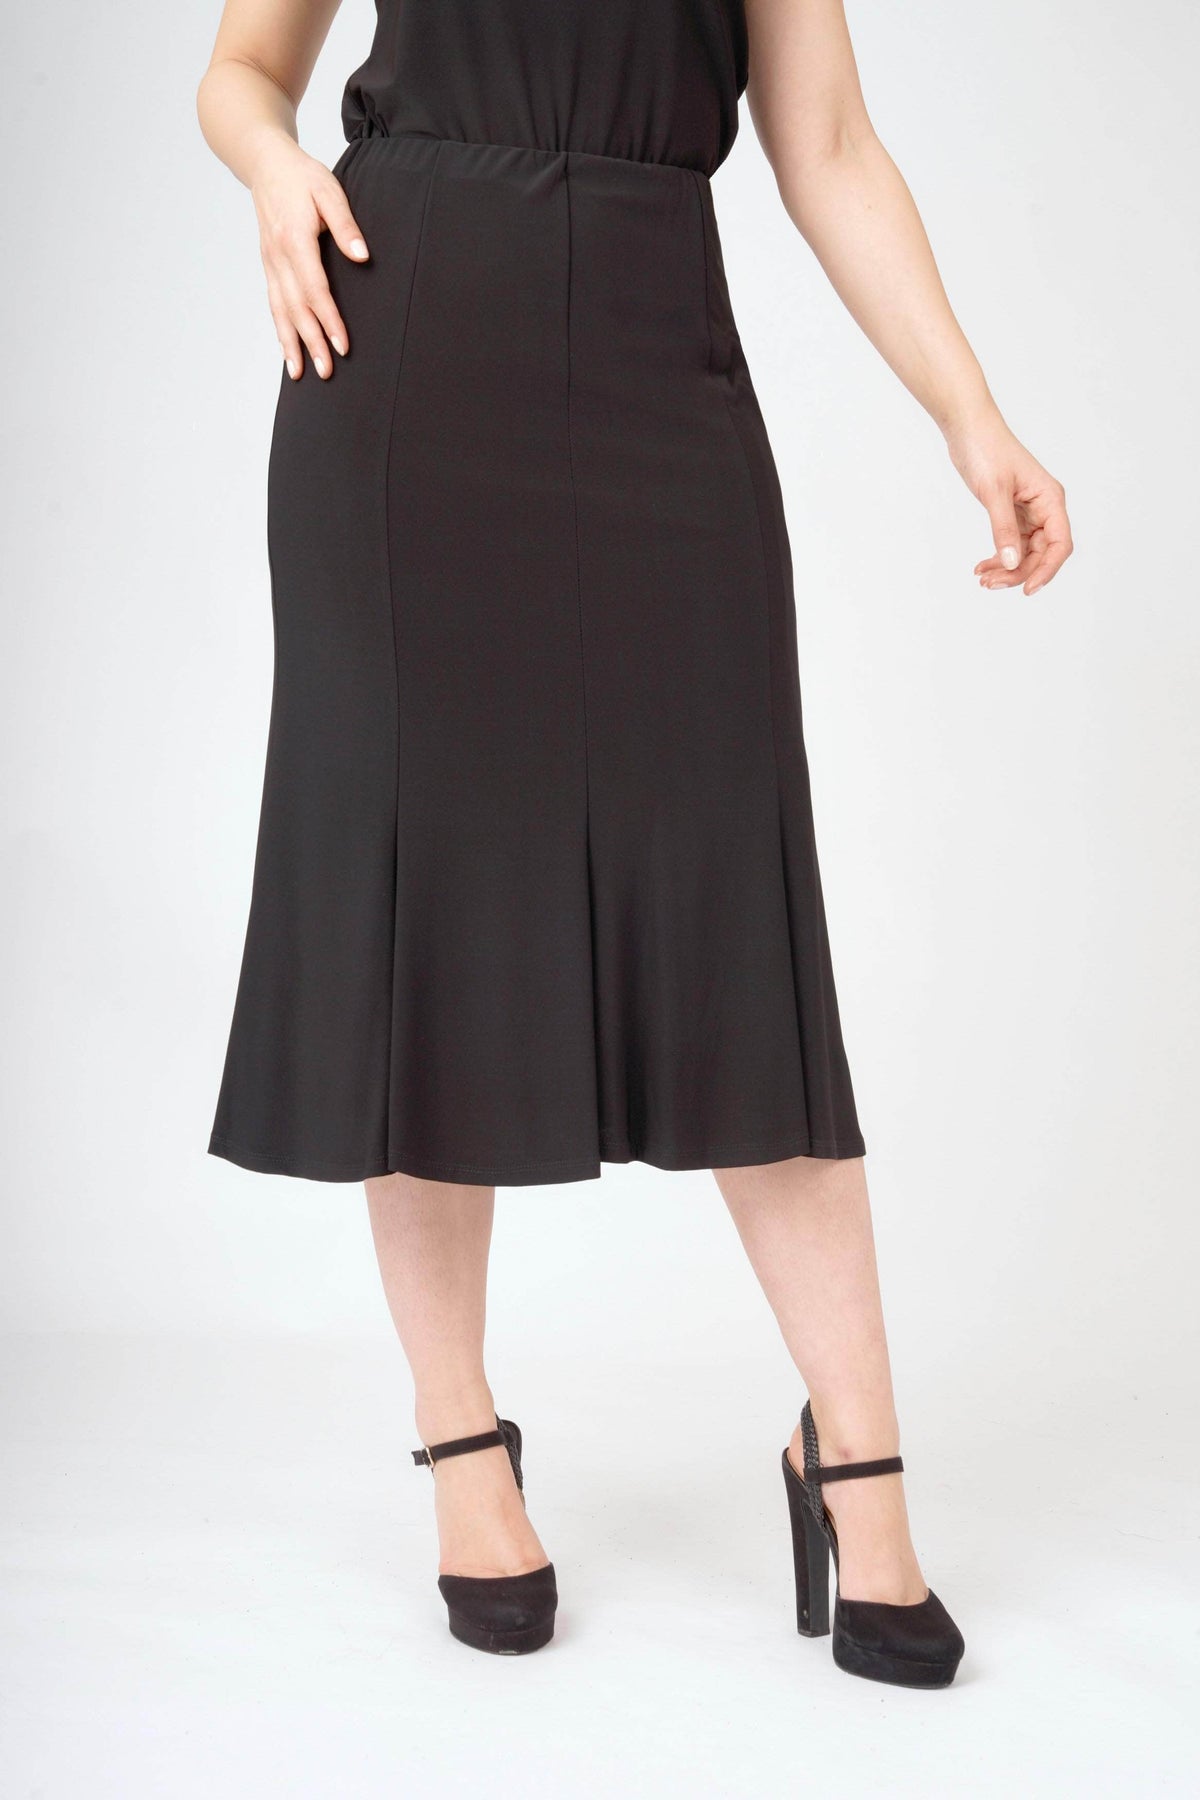 Saloos Skirt Black / 12 Essential Midi-Skirt